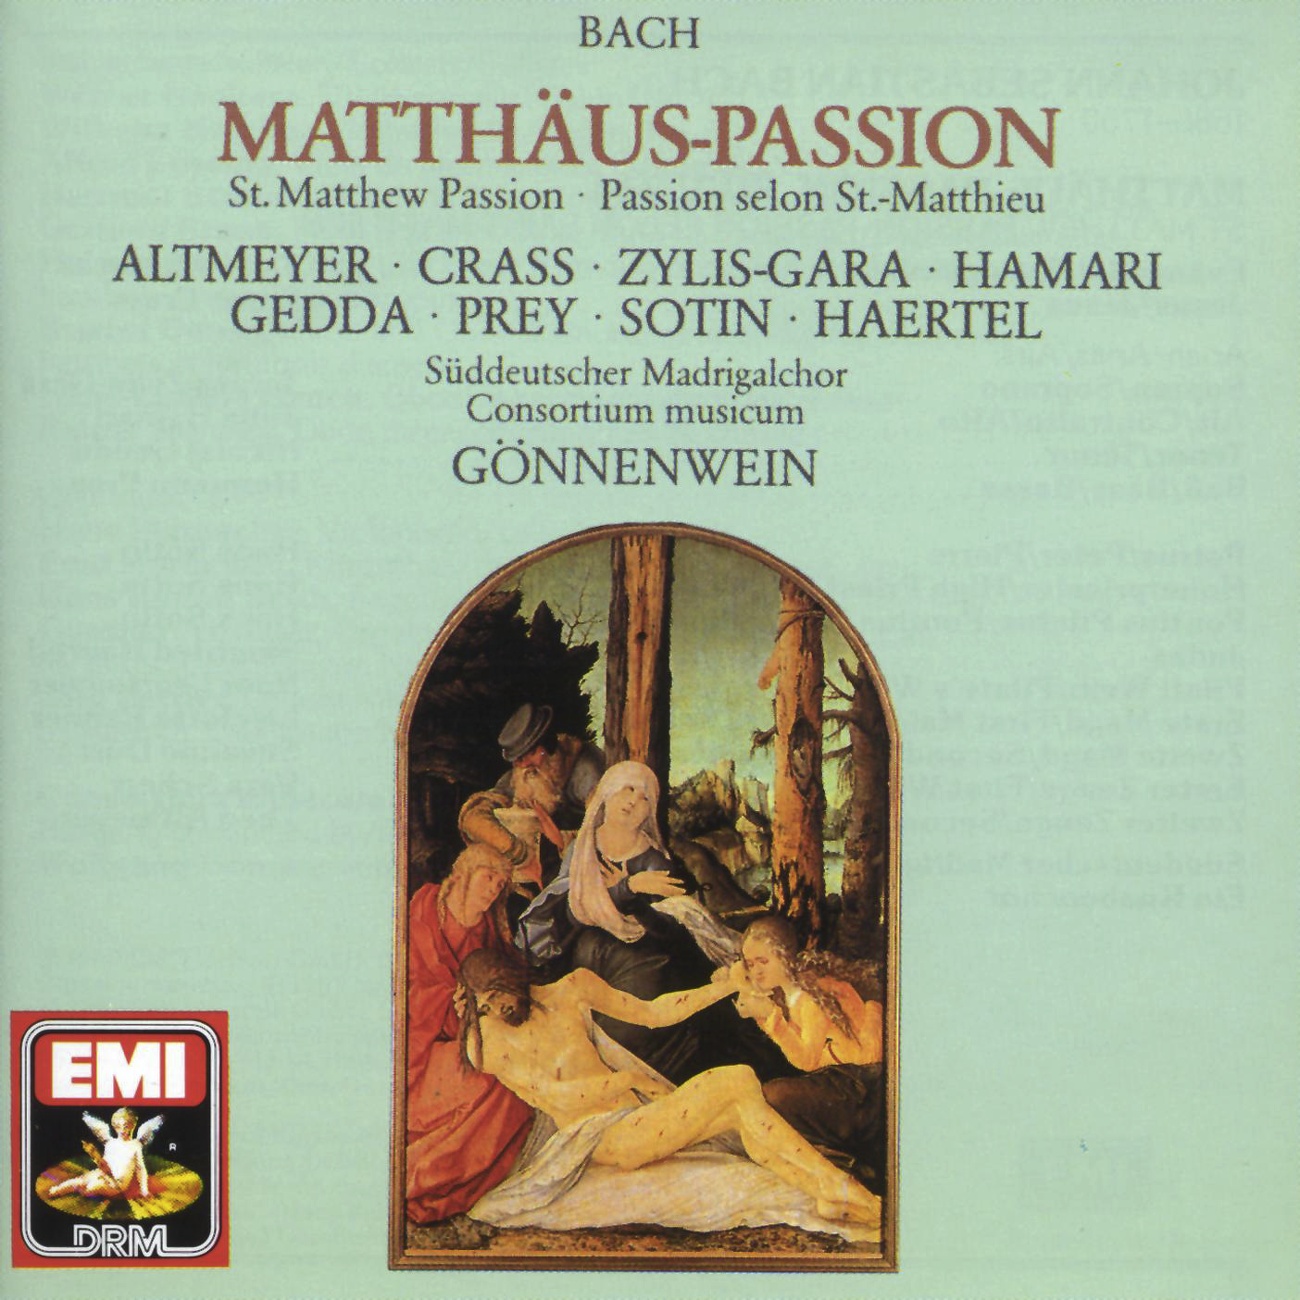 Matth usPassion BWV 244  Oratorium in 2 Teilen 1989 Digital Remaster, 2. Teil: Nr. 53  Choral: Befiehl Du Deine Wege Chor I